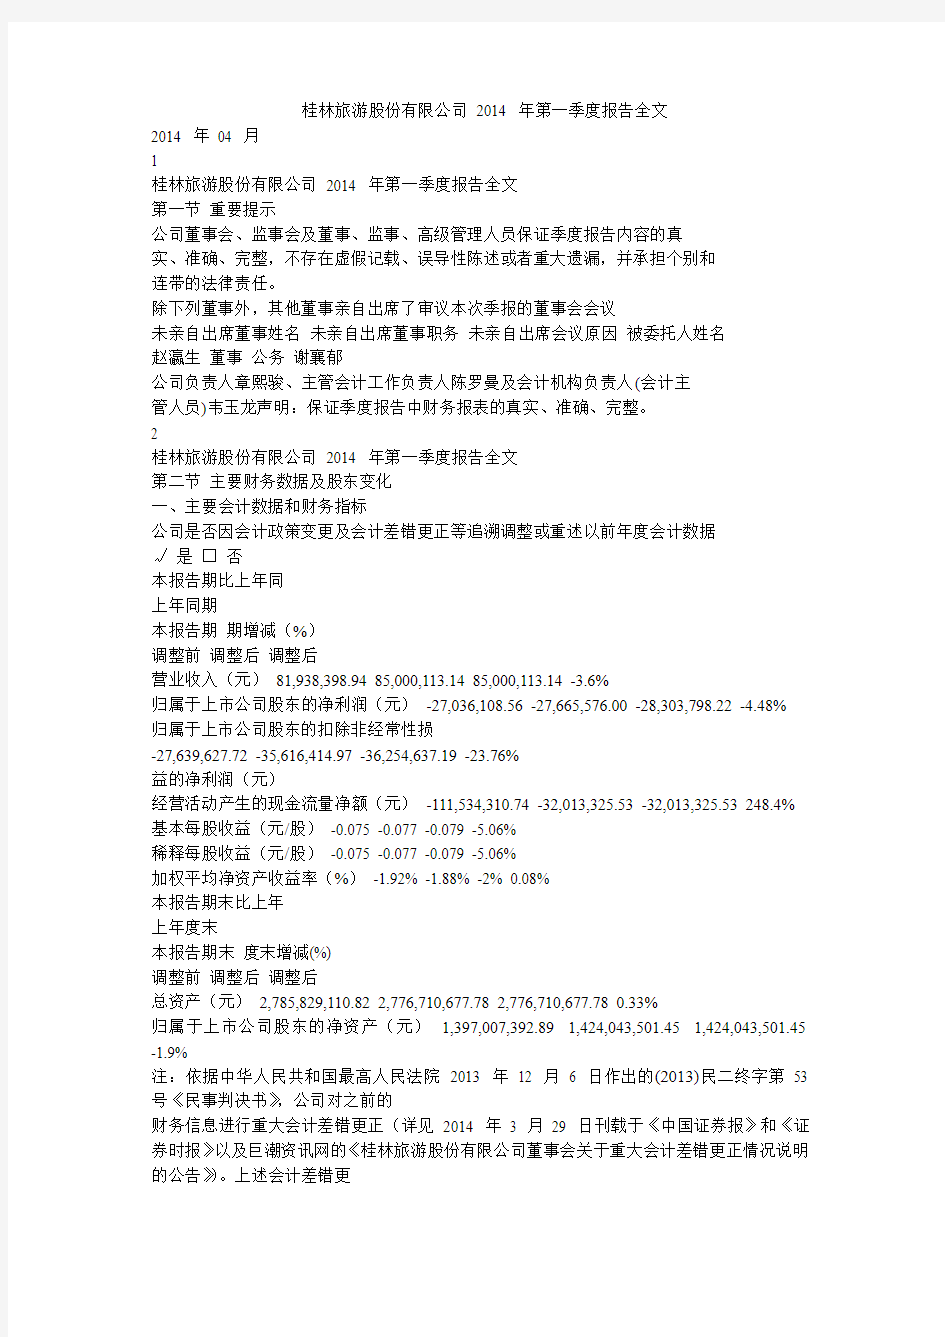 桂林旅游股份有限公司 2014 年第一季度报告全文